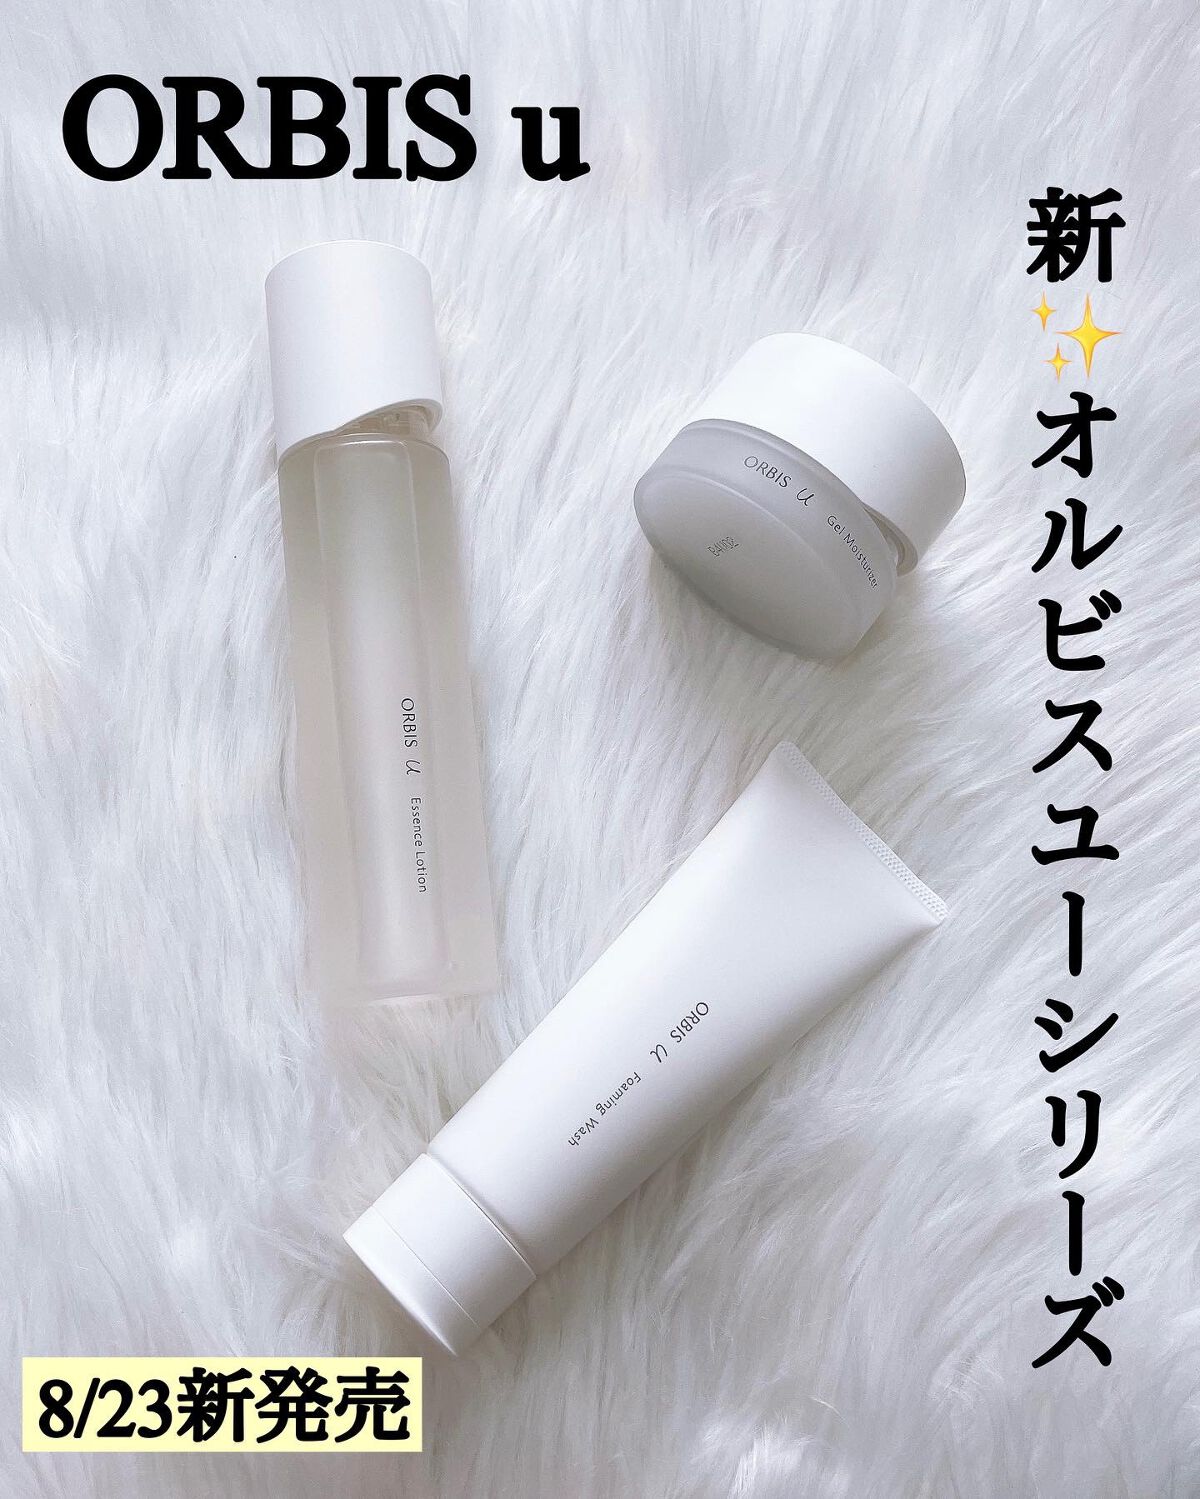 新・オルビスユードット 【ボトル入り】3ステップセット - 化粧水 ...